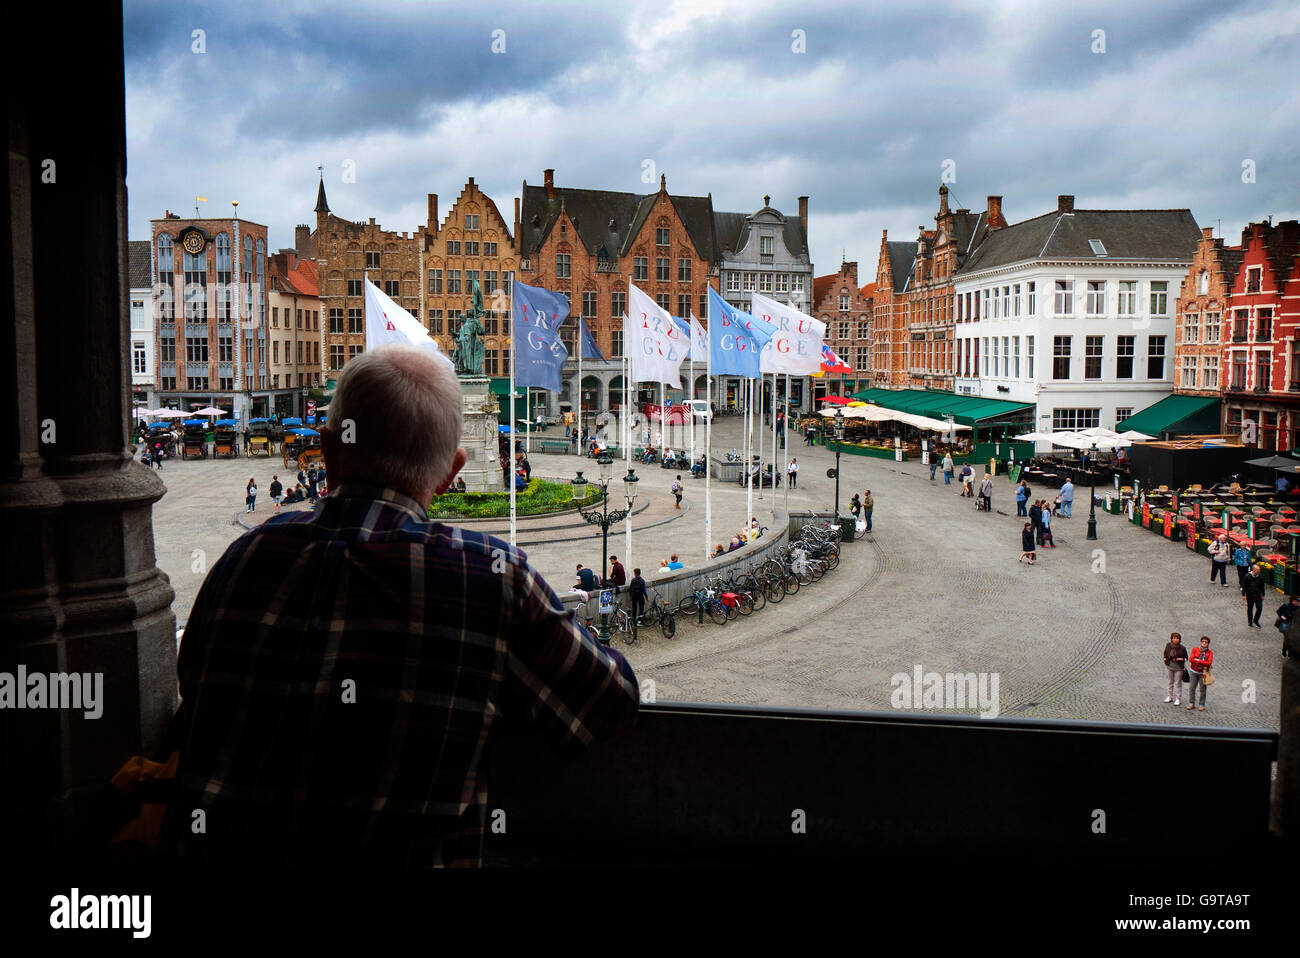 Vista di Bruges piazza del mercato in Belgio dall'Duvelorium Grand Beer Cafè Historium museo. Solo uso editoriale. Foto Stock